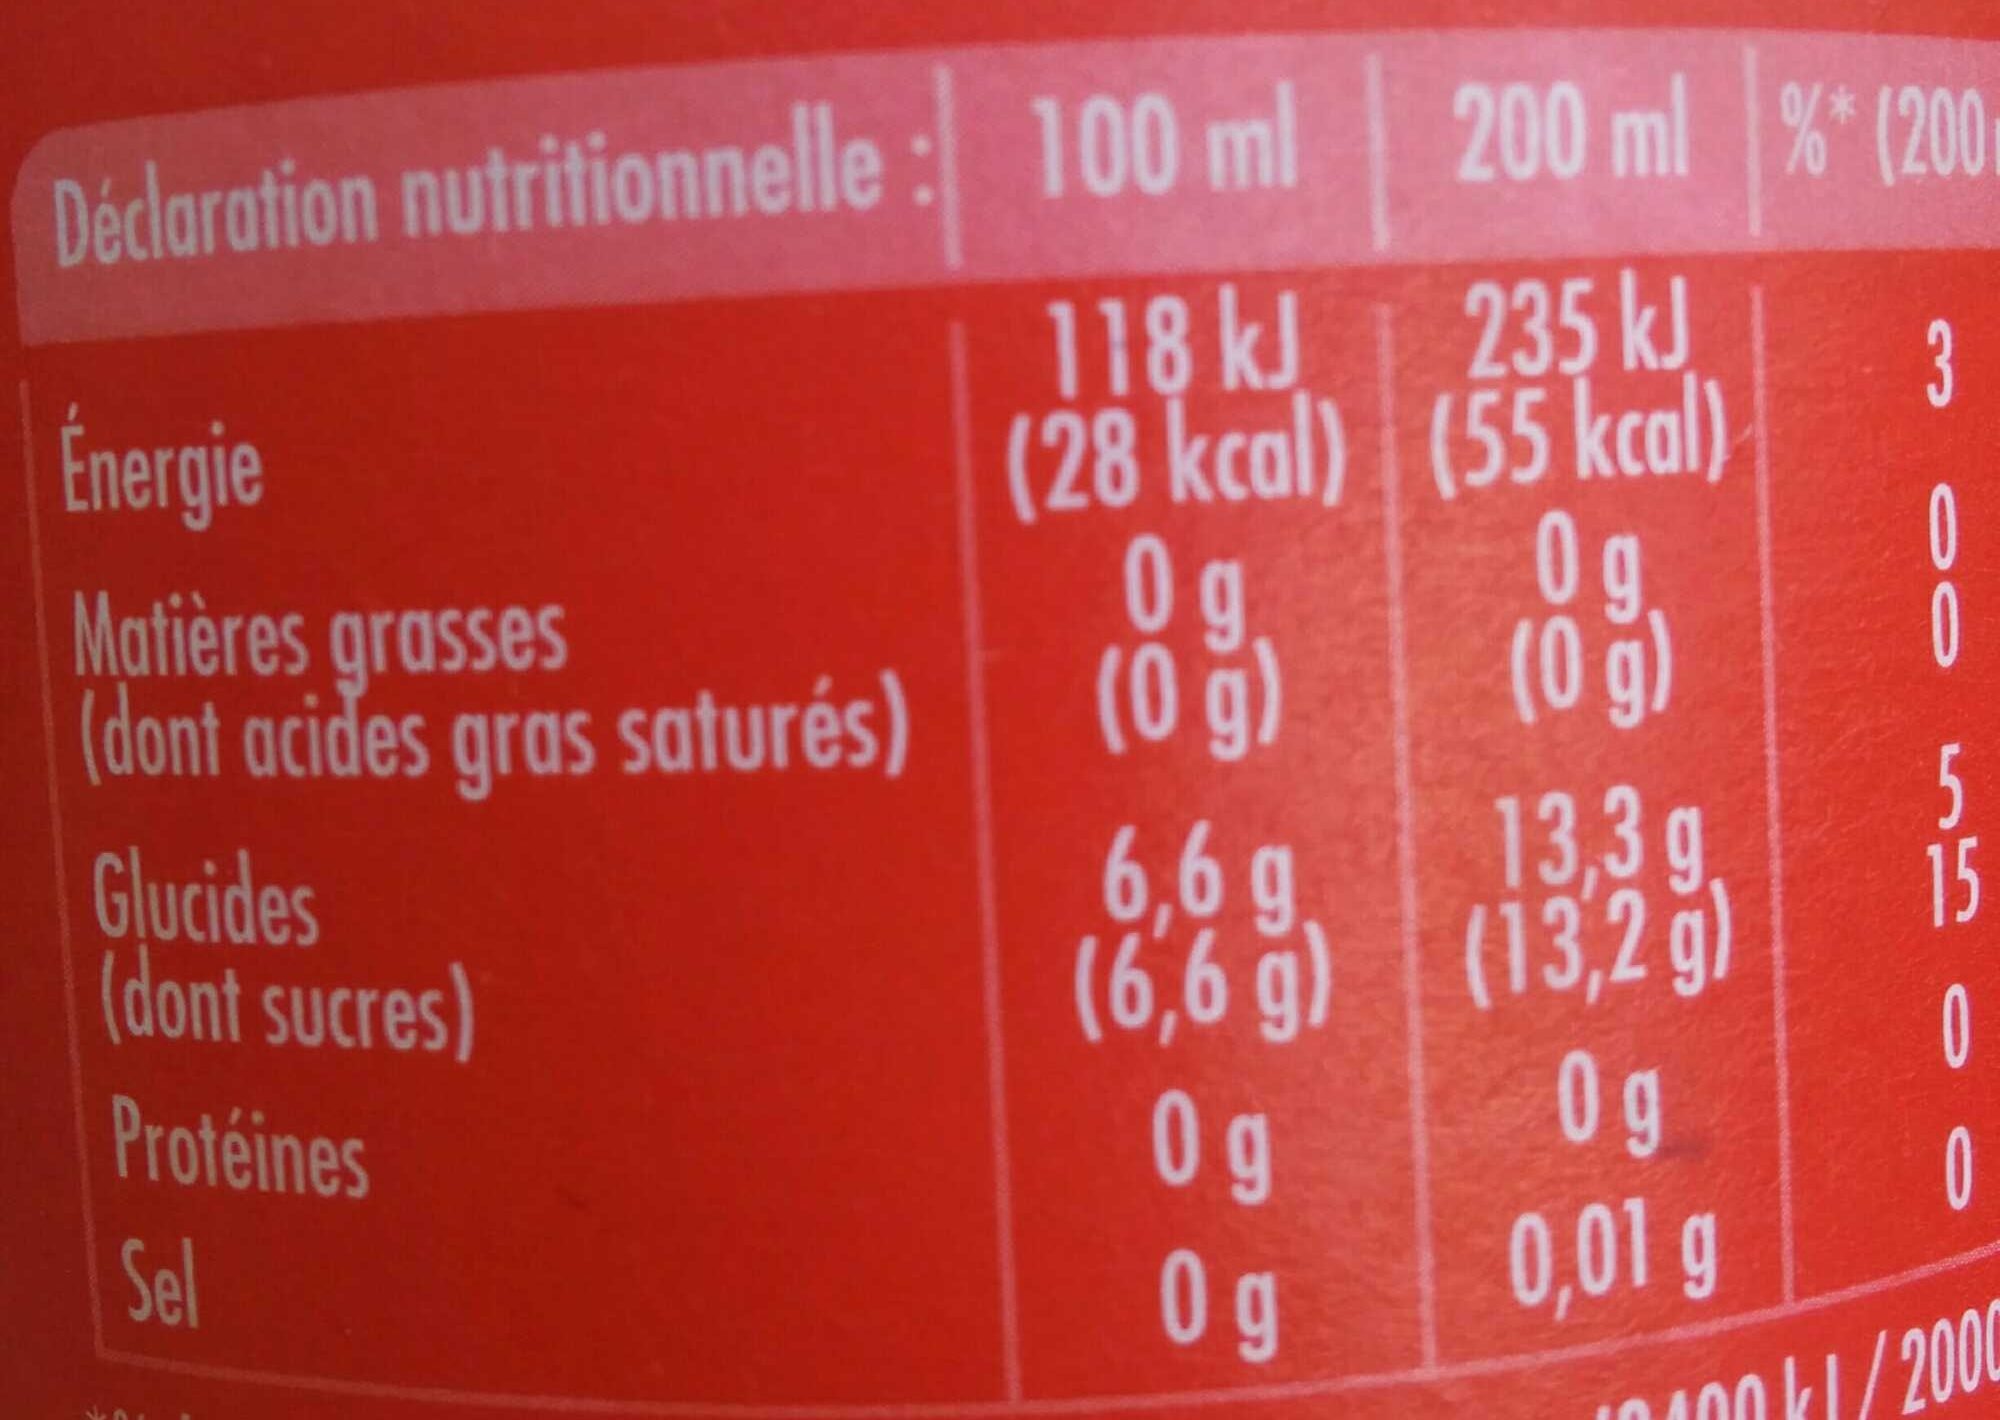 Agrum' aux saveurs de 4 agrumes - Informations nutritionnelles - fr